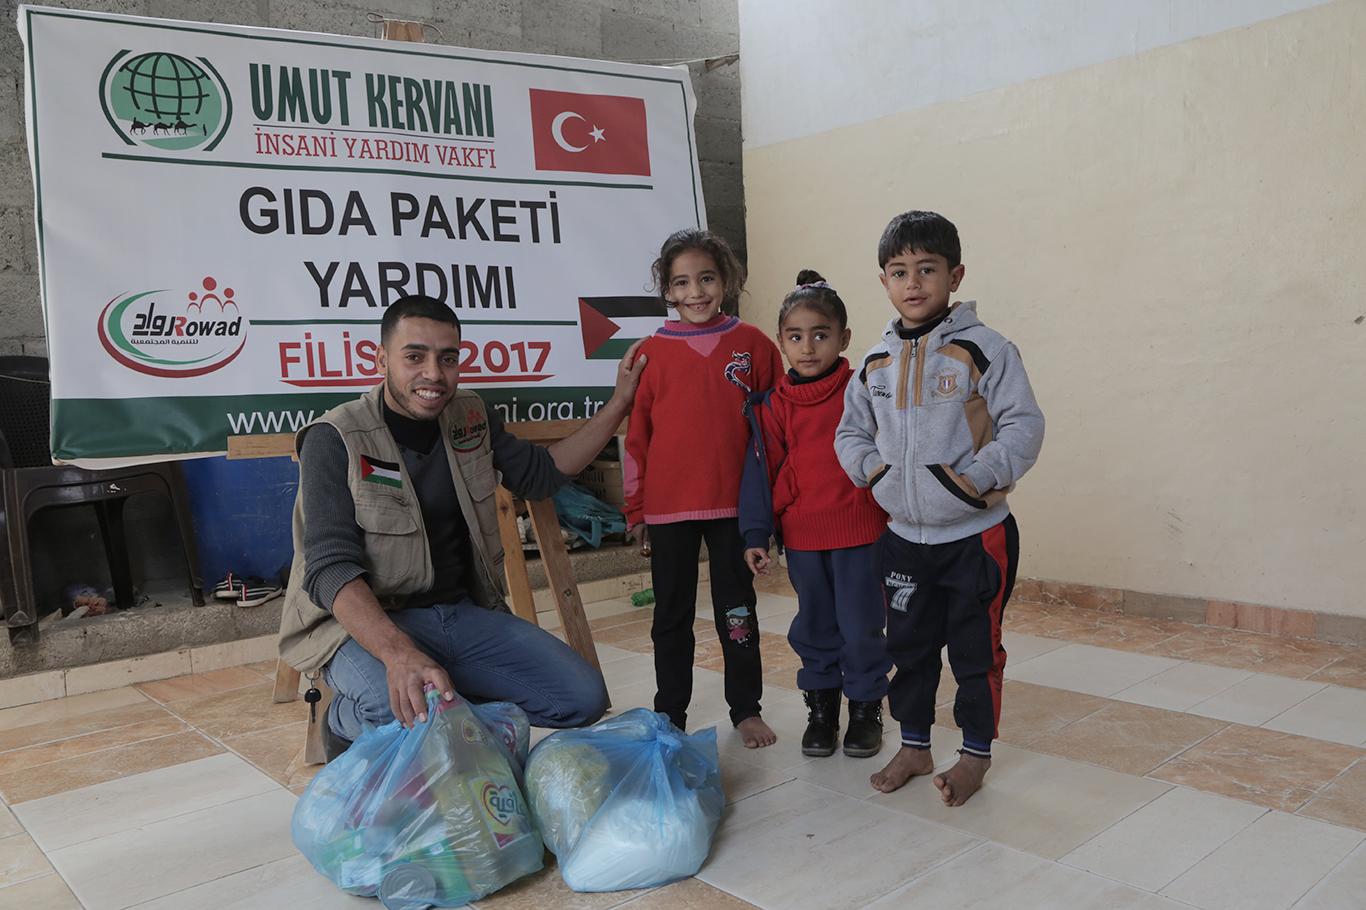 Umut Kervanı Vakfı Gazze’de gıda paketi dağıttı